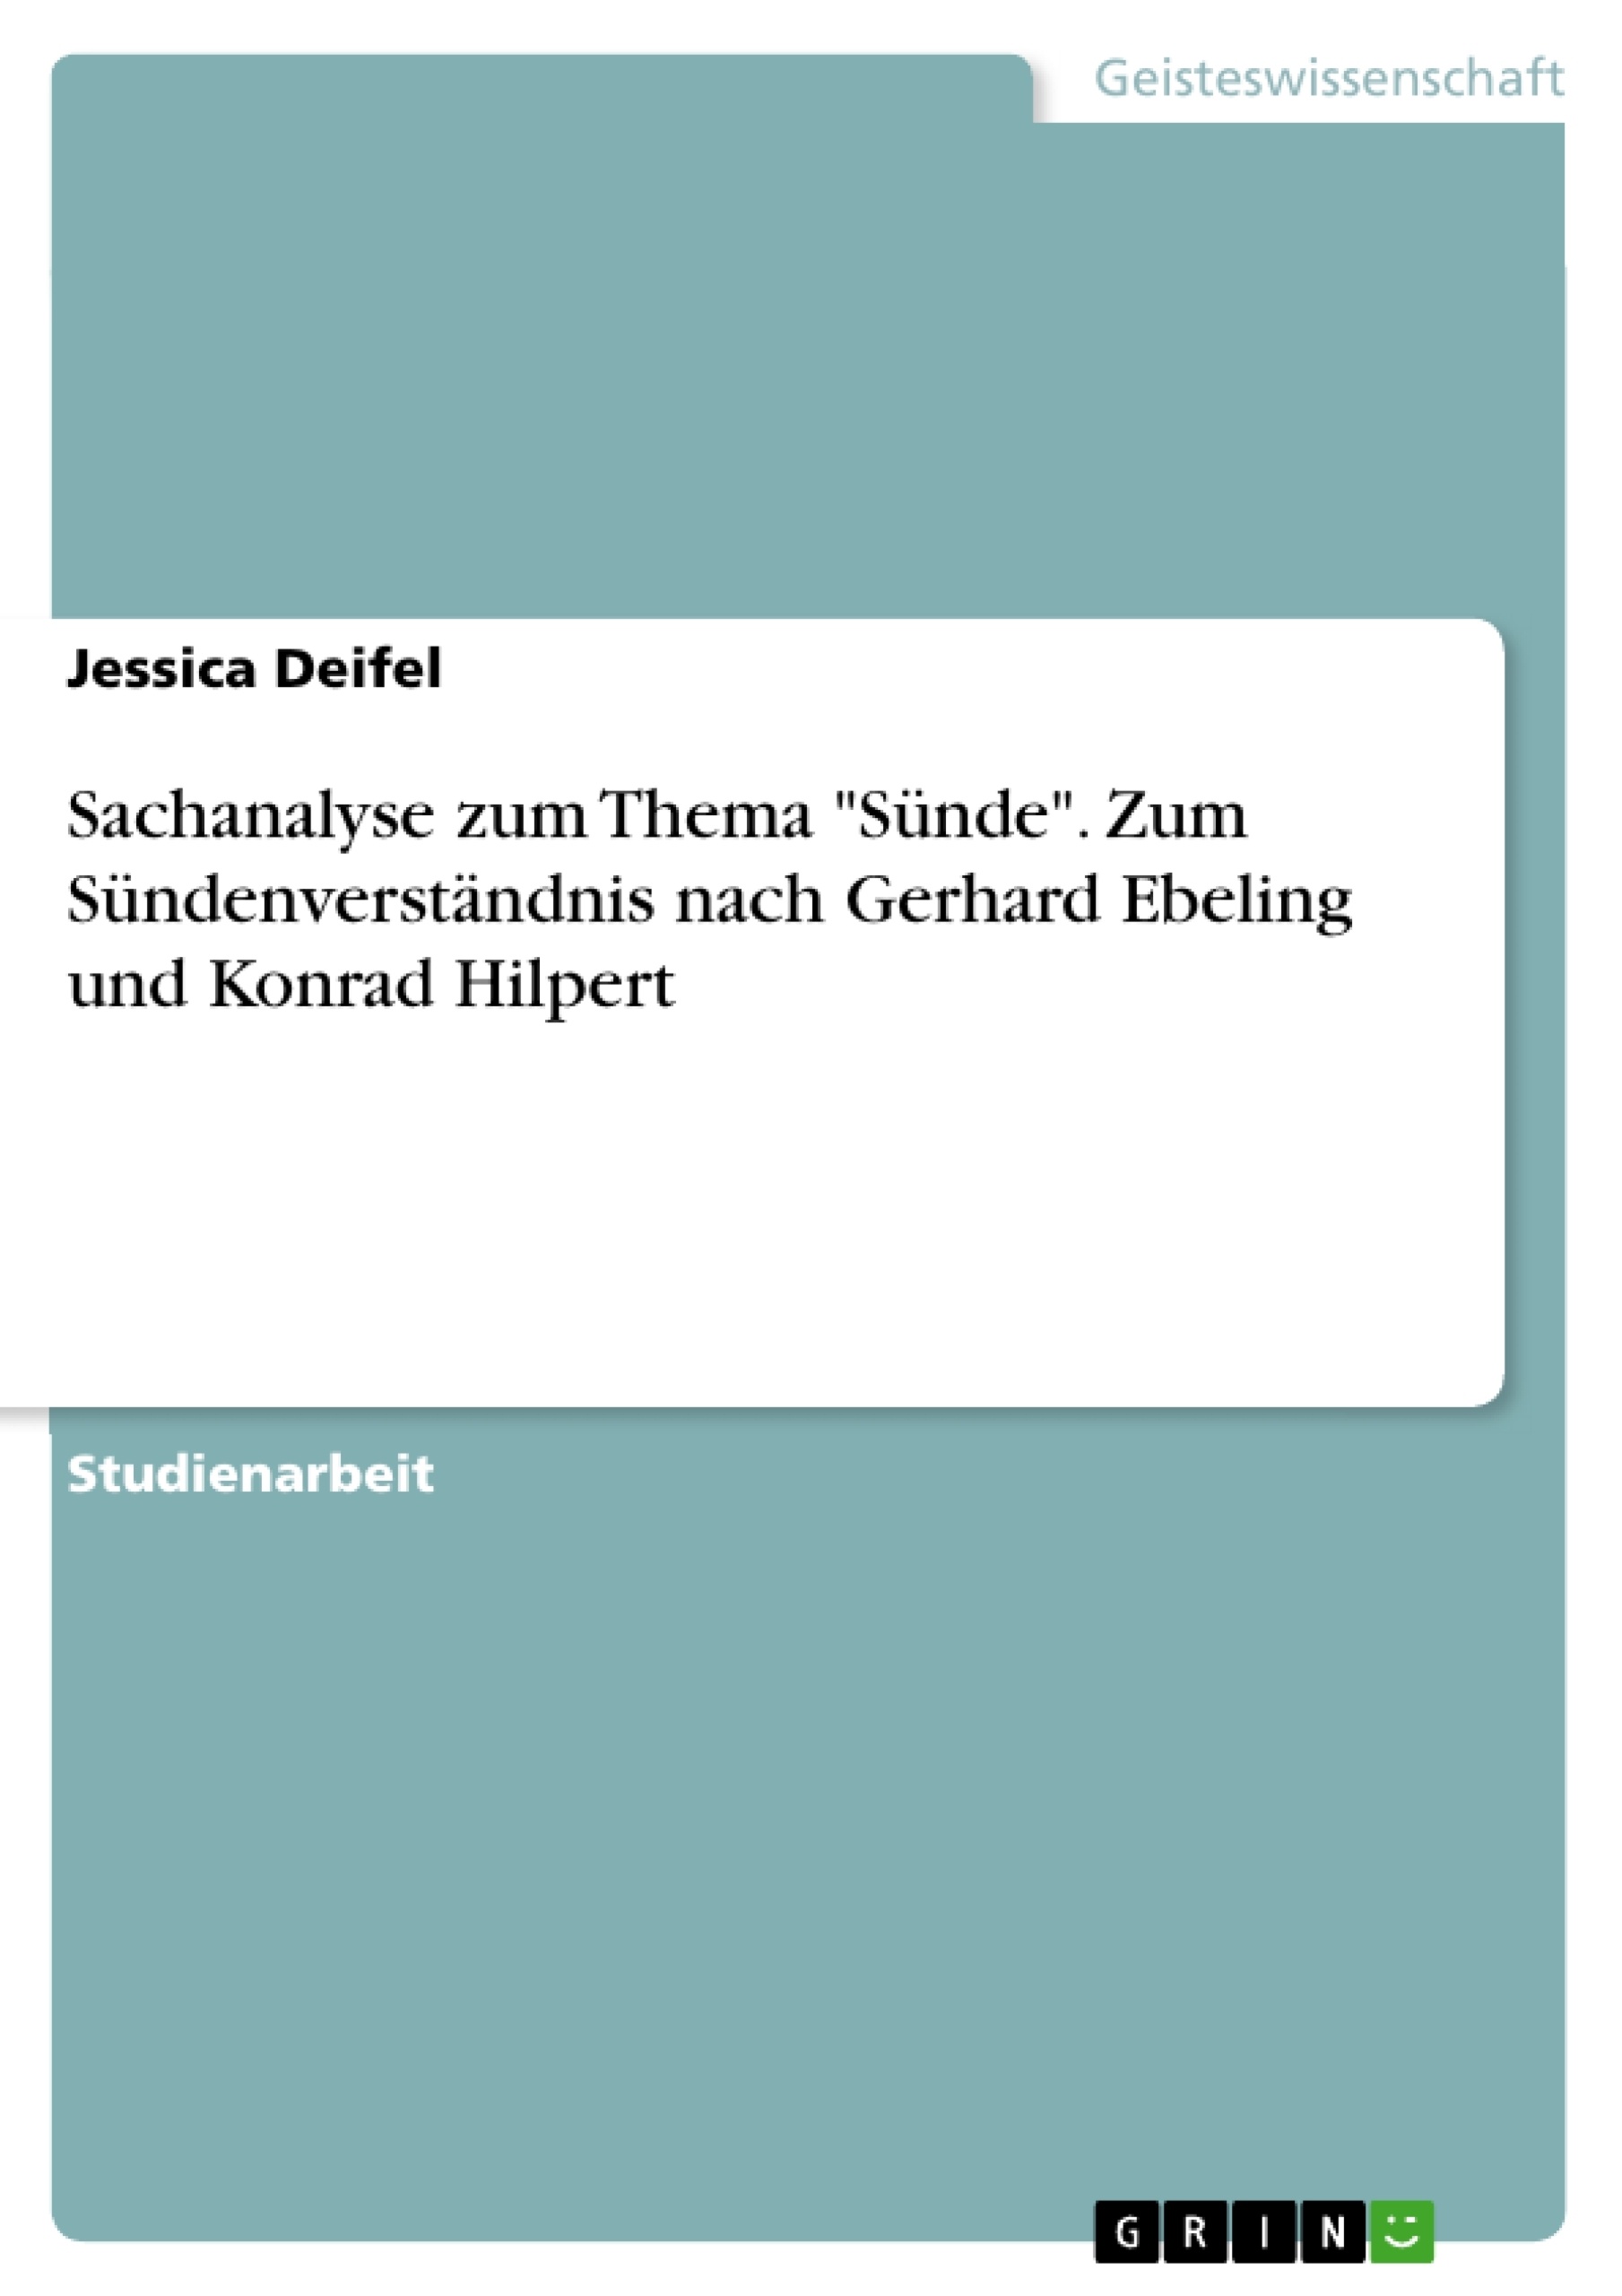 Título: Sachanalyse zum Thema "Sünde". Zum Sündenverständnis nach Gerhard Ebeling und Konrad Hilpert